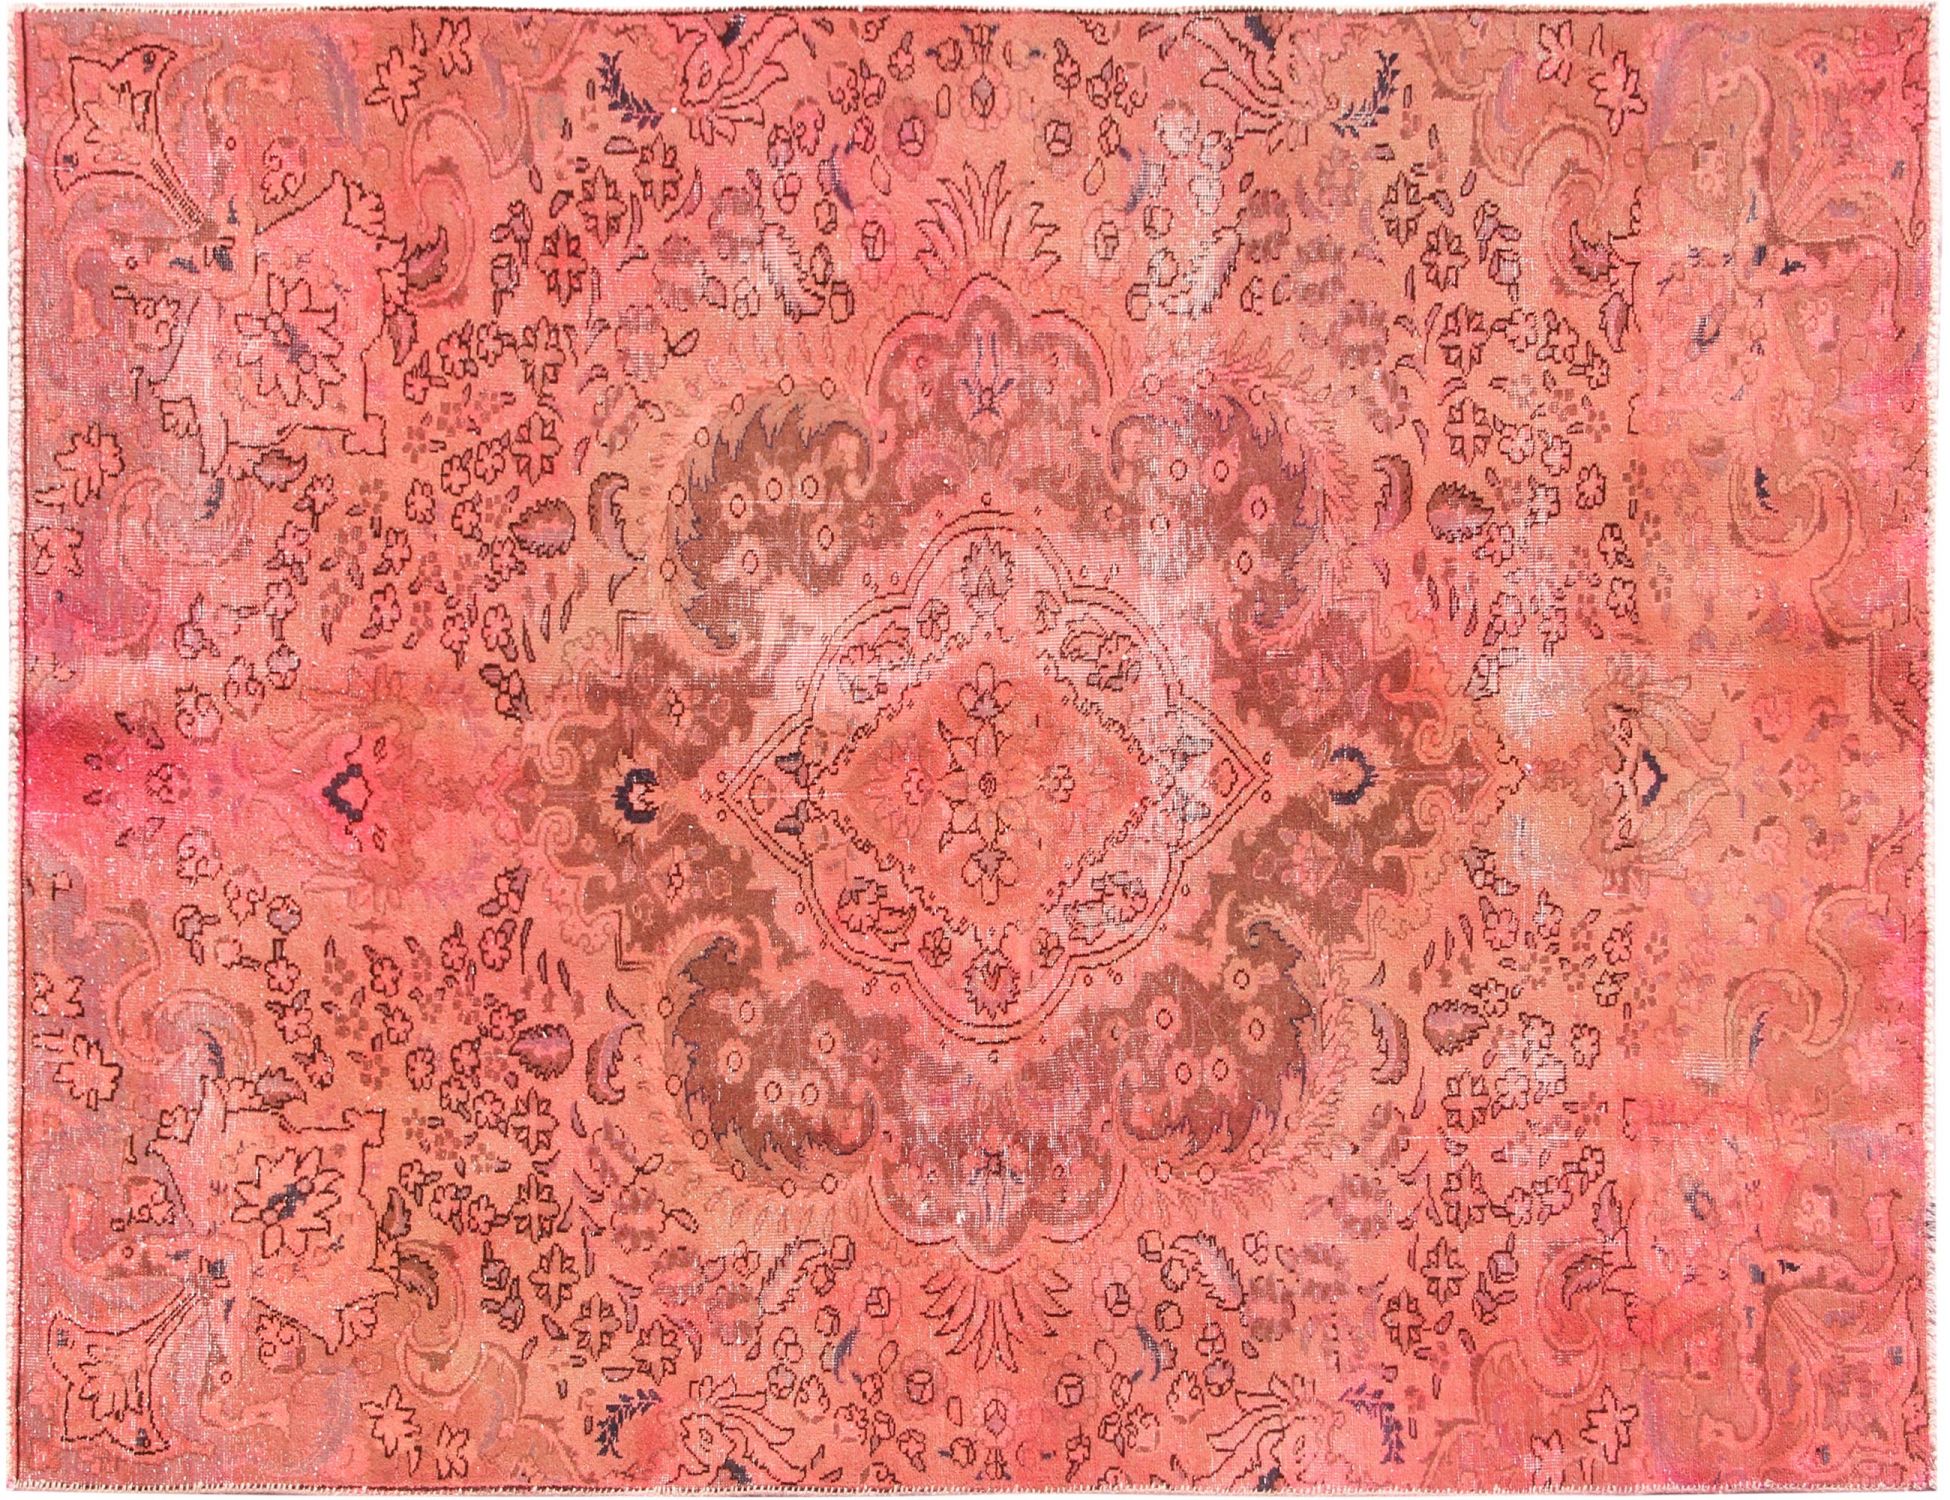 Persischer Vintage Teppich  rot <br/>228 x 143 cm